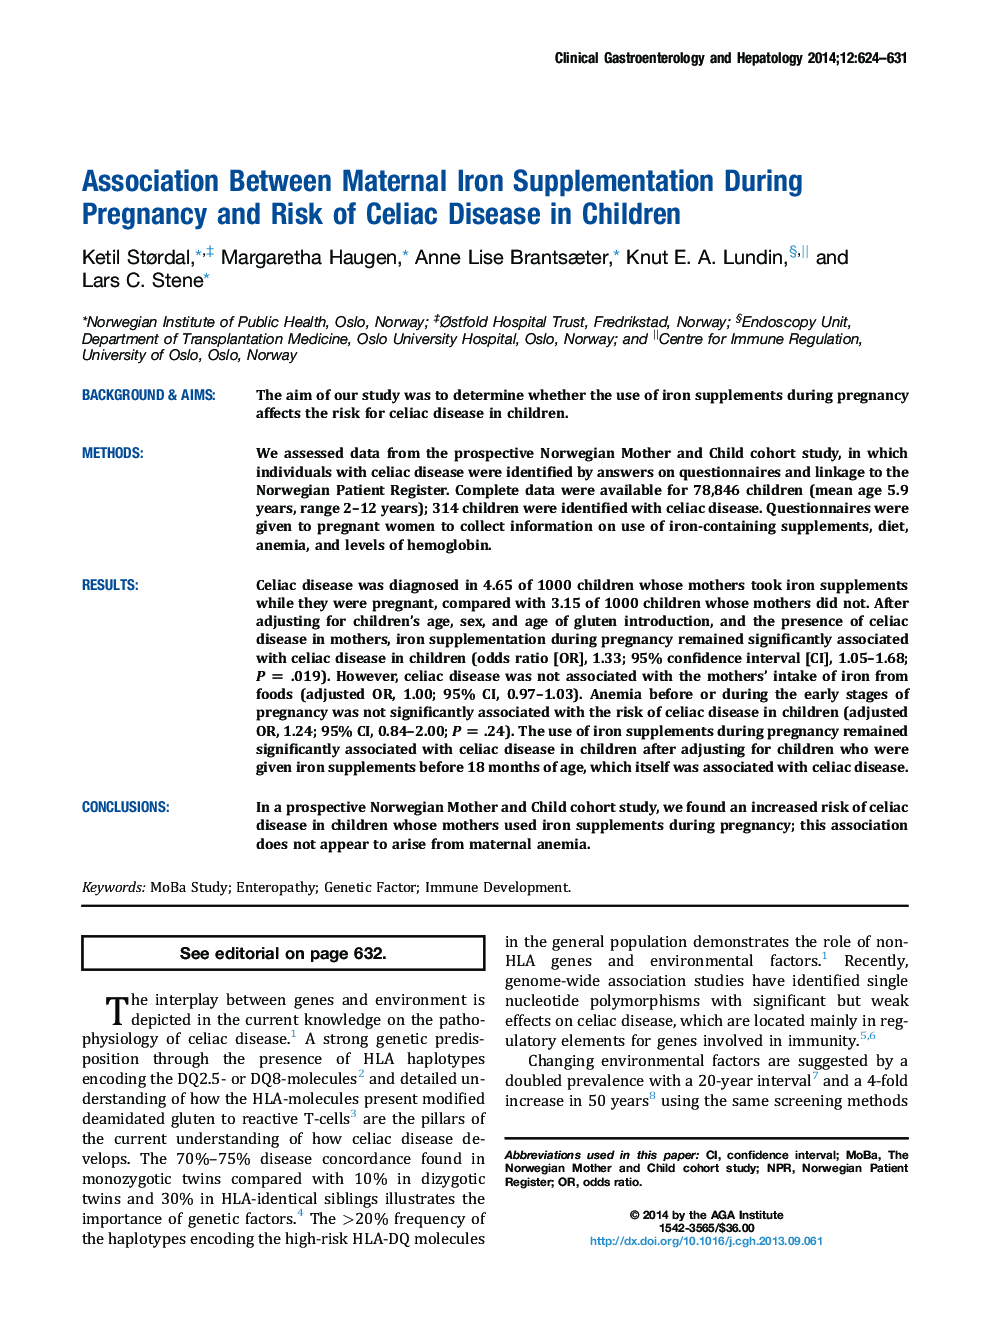 ارتباط بین مکمل آهن در دوران بارداری و خطر بیماری سلیاک در کودکان 